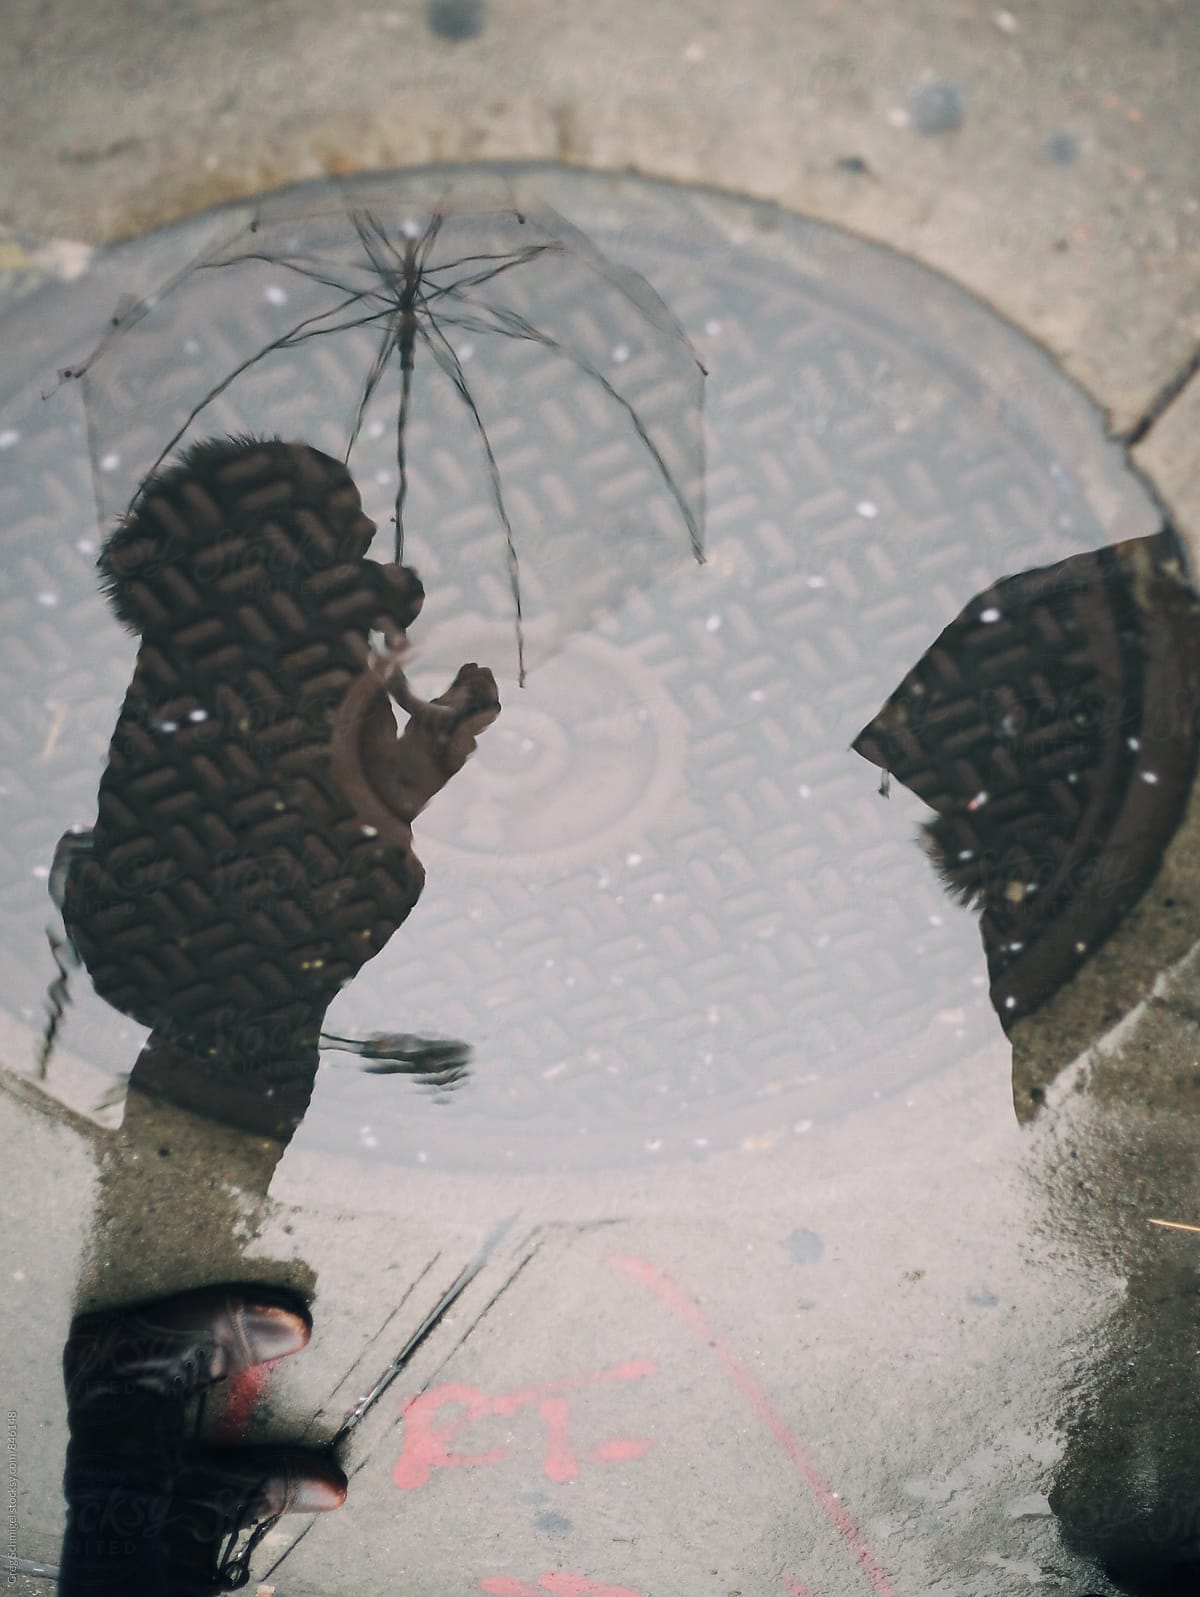 A Reflection Of A Person Holding An Umbrella On A Rainy City Sidewalk Del Colaborador De